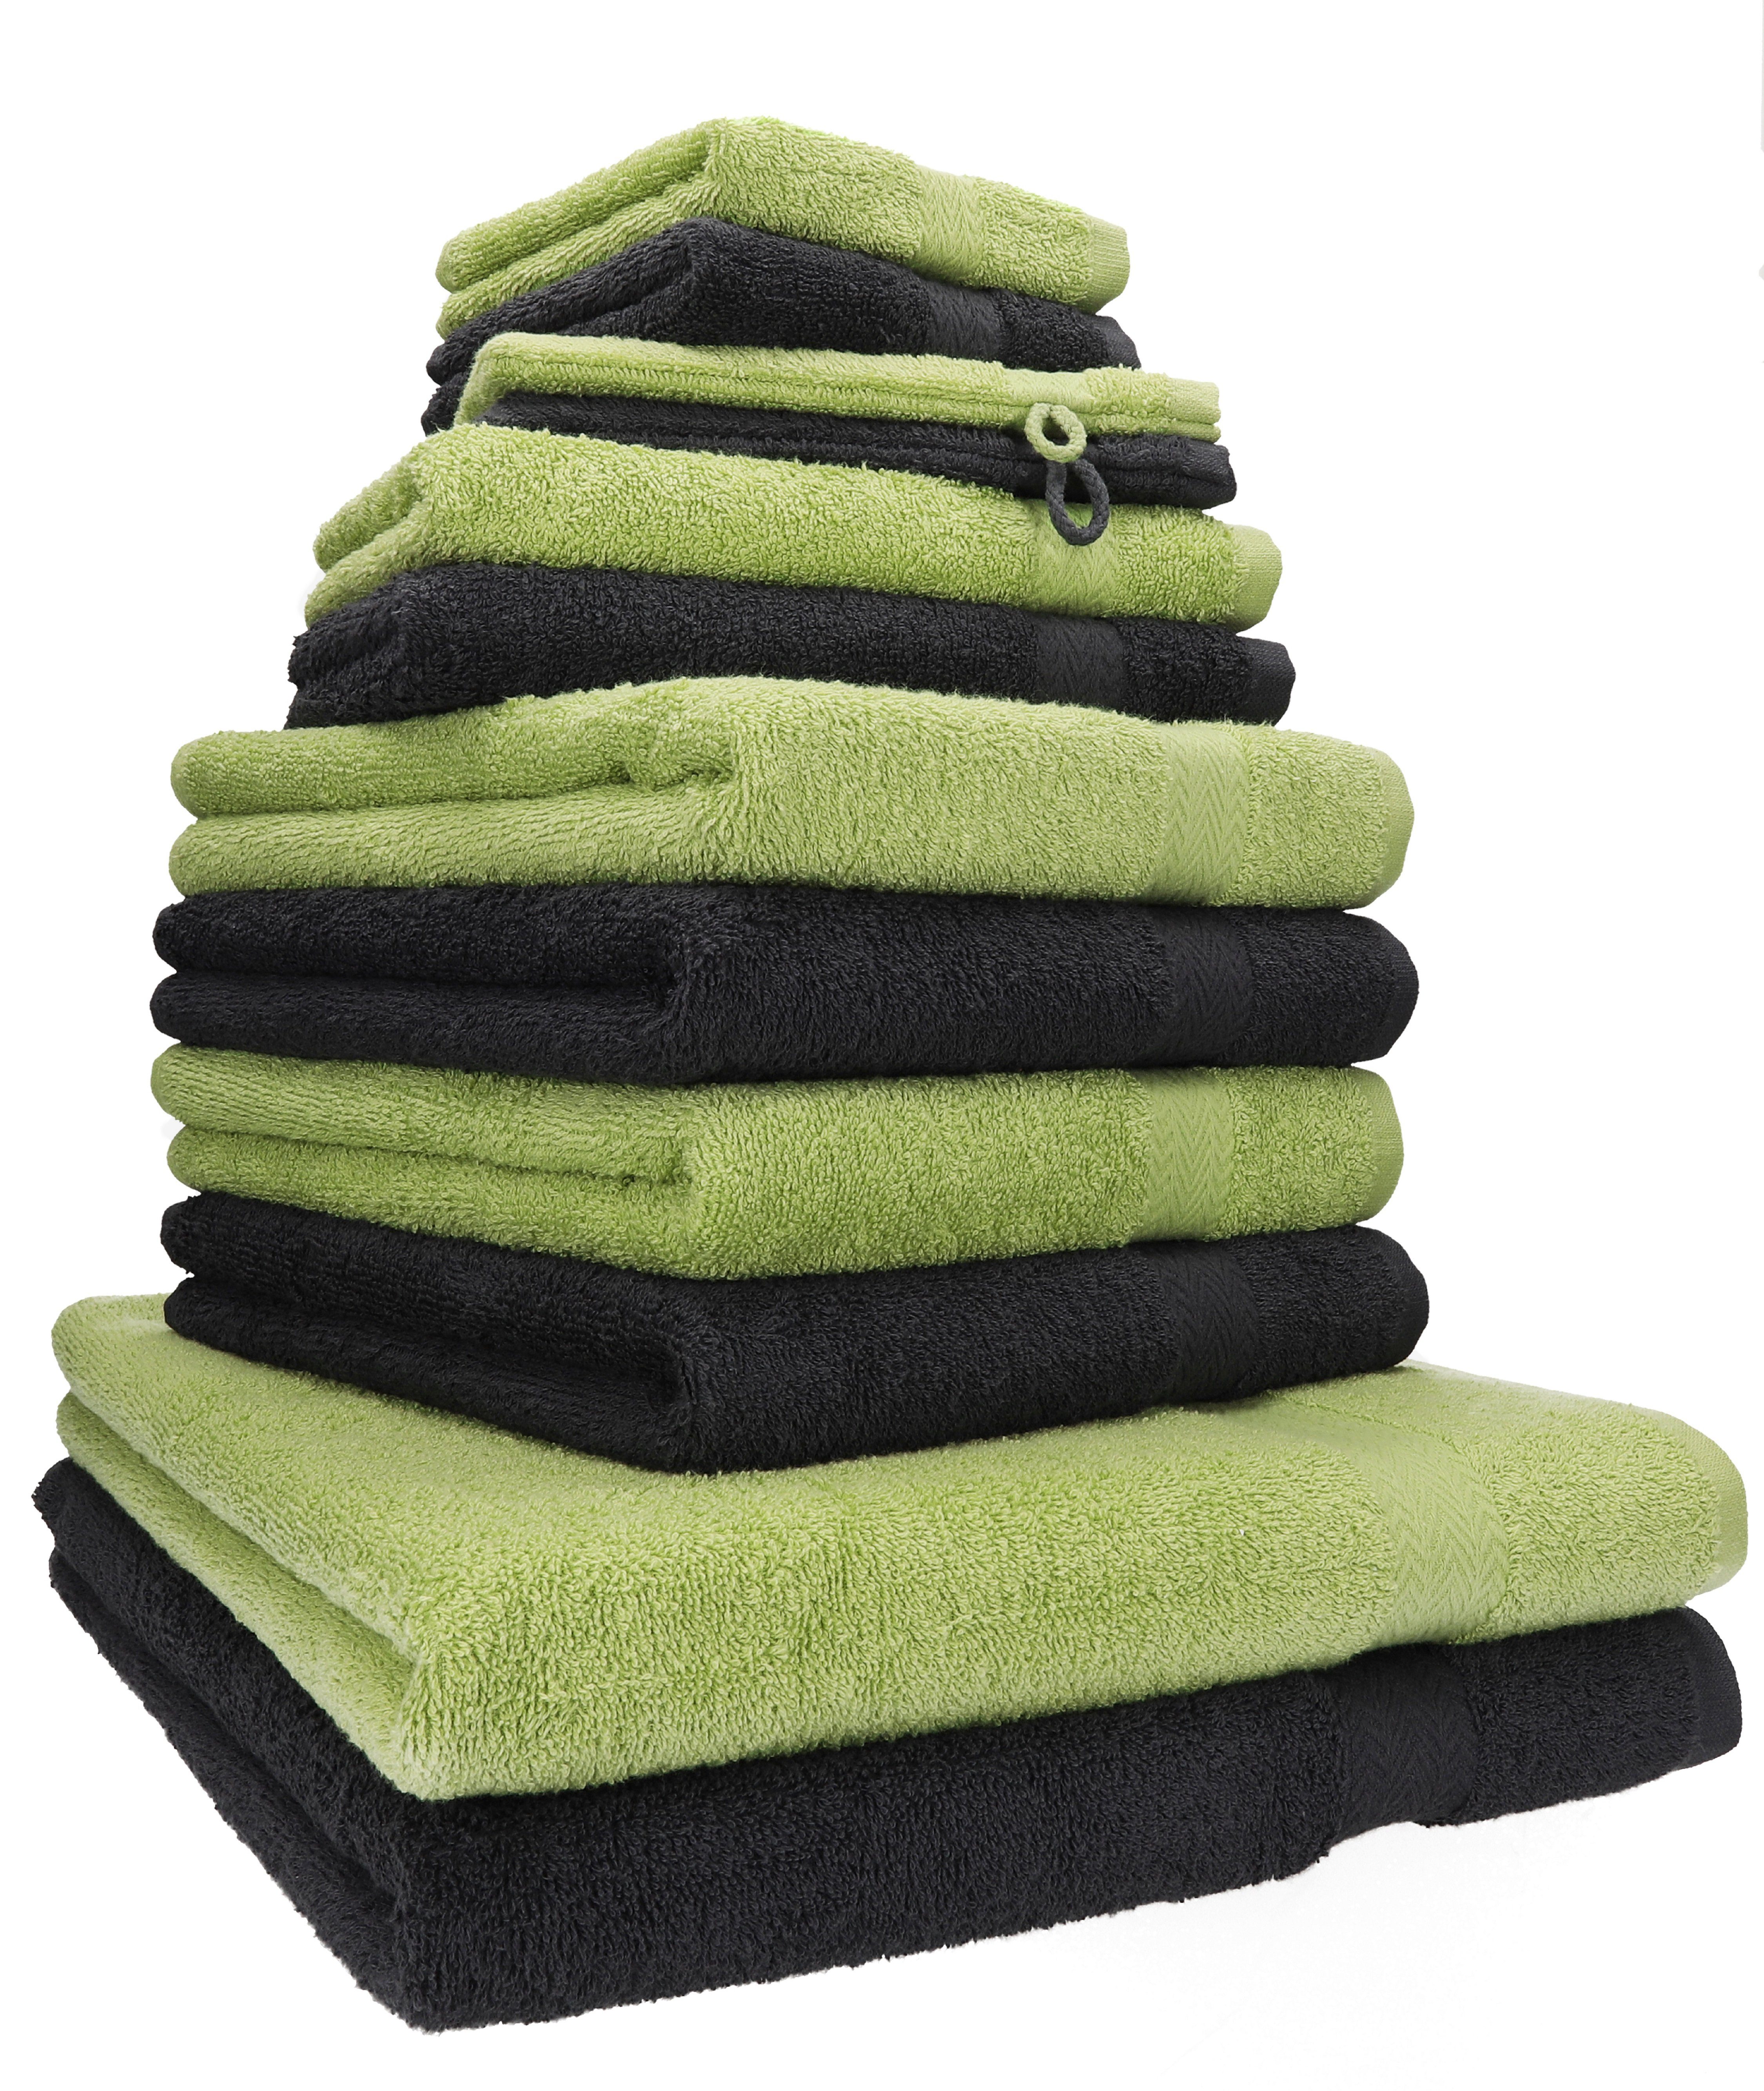 Betz Handtuch Set 12-TLG. Handtuch Set Premium Farbe Graphit/avocadogrün, 100% Baumwolle, (12-tlg)